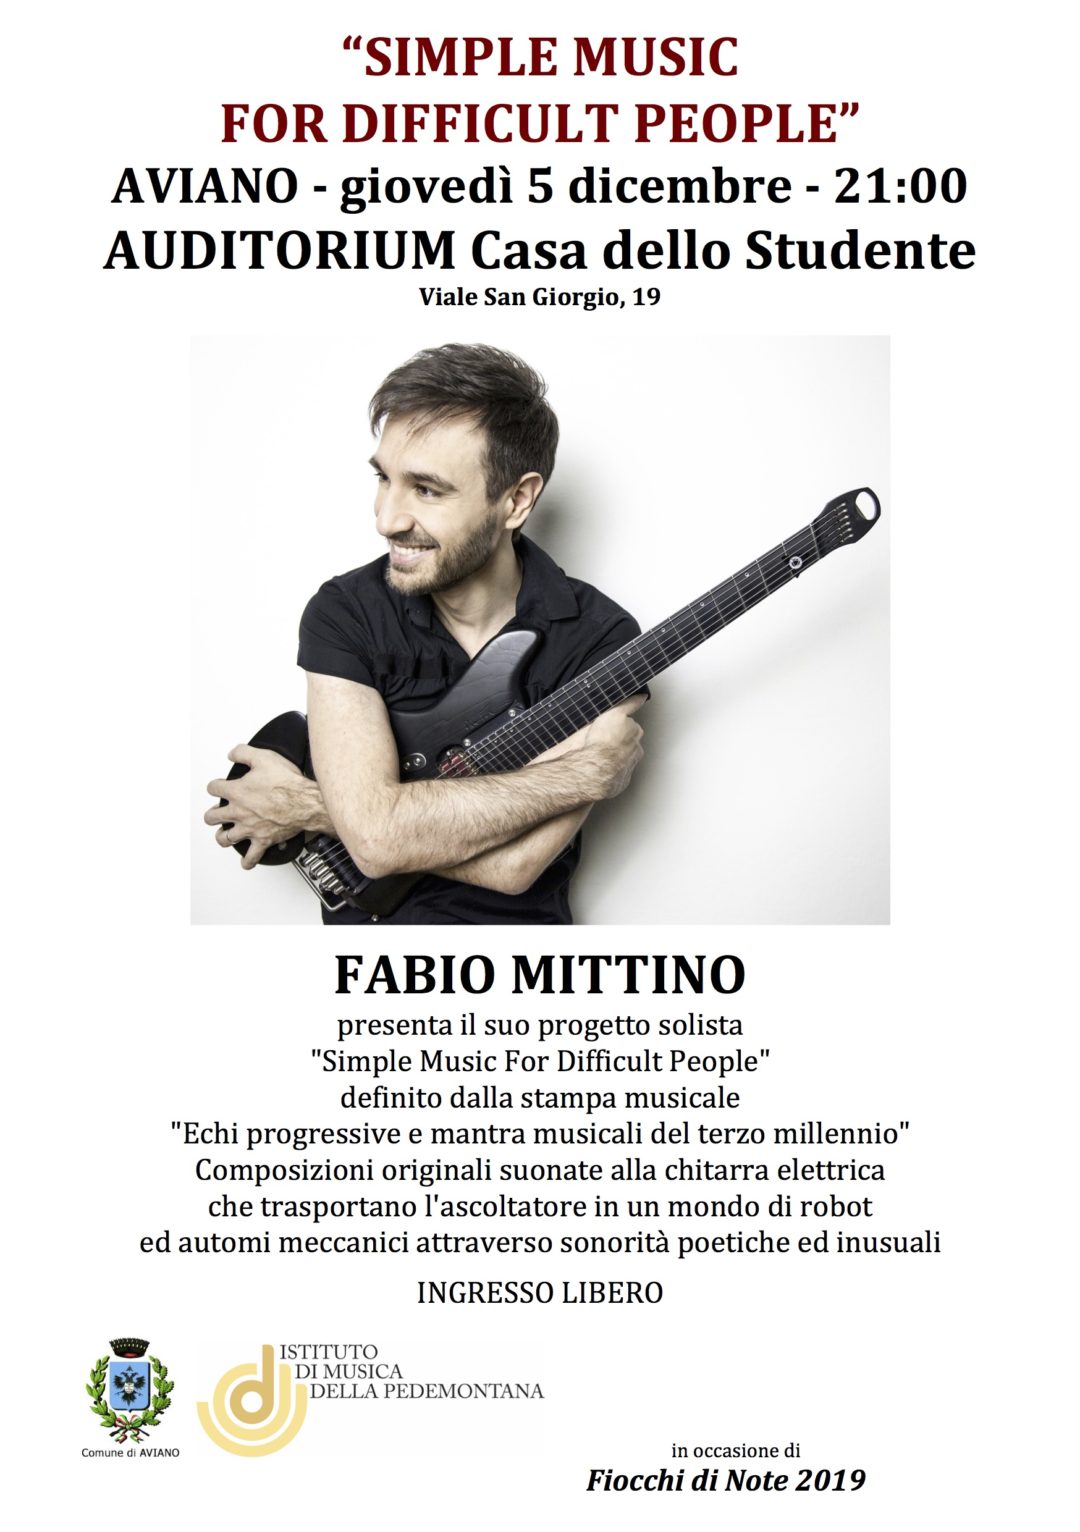 Fabio Mittino in Concerto